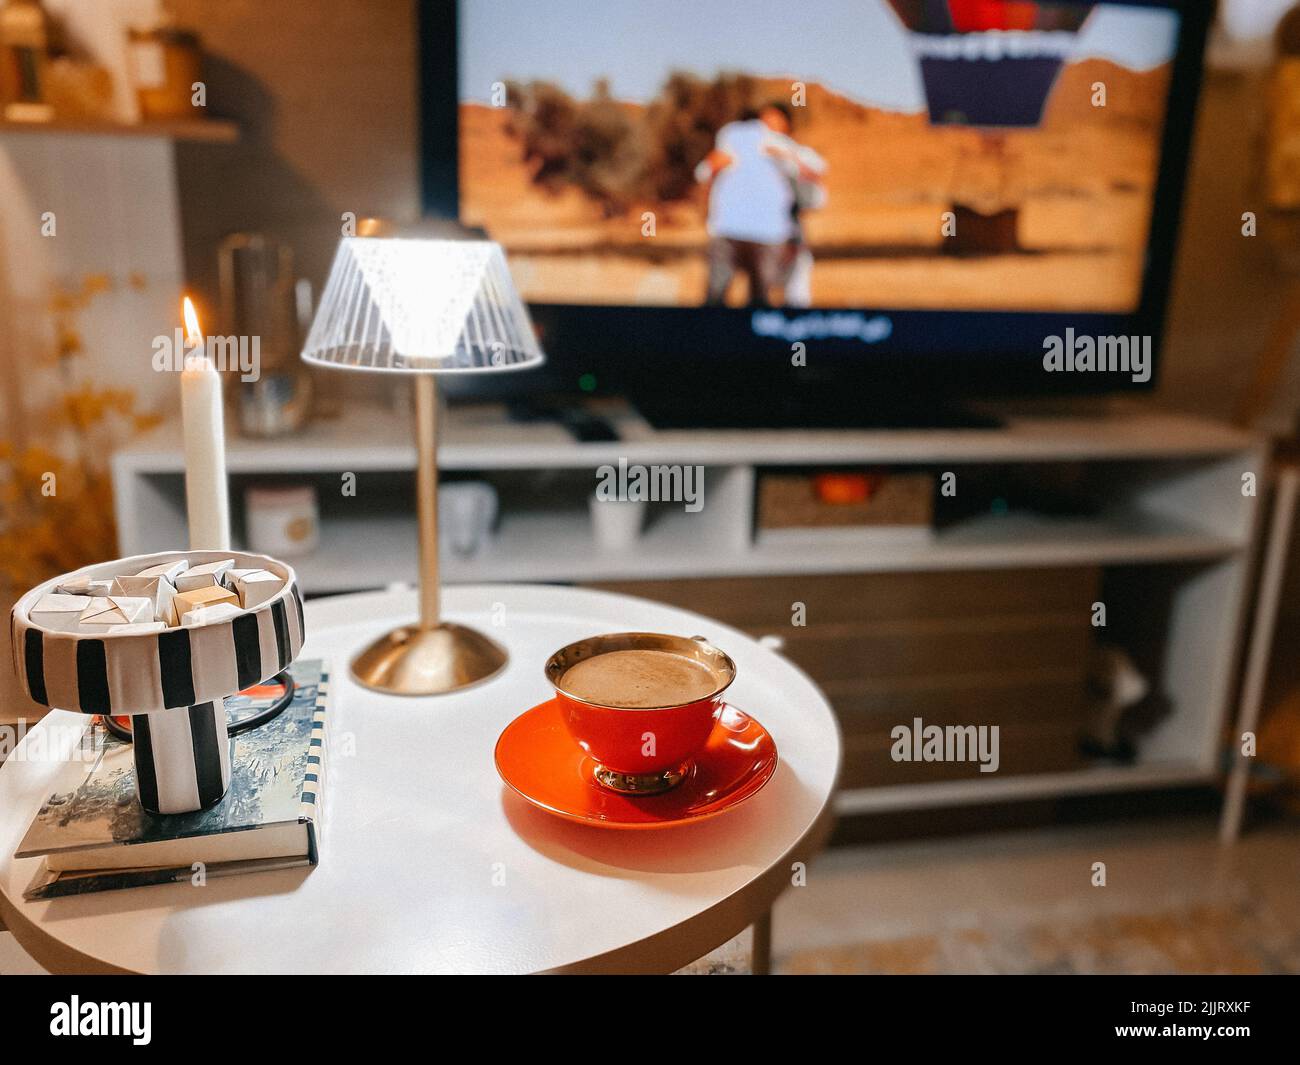 Un gros plan d'une tasse de café magnifiquement arrangé sur une table décorée d'une lampe contre un téléviseur Banque D'Images